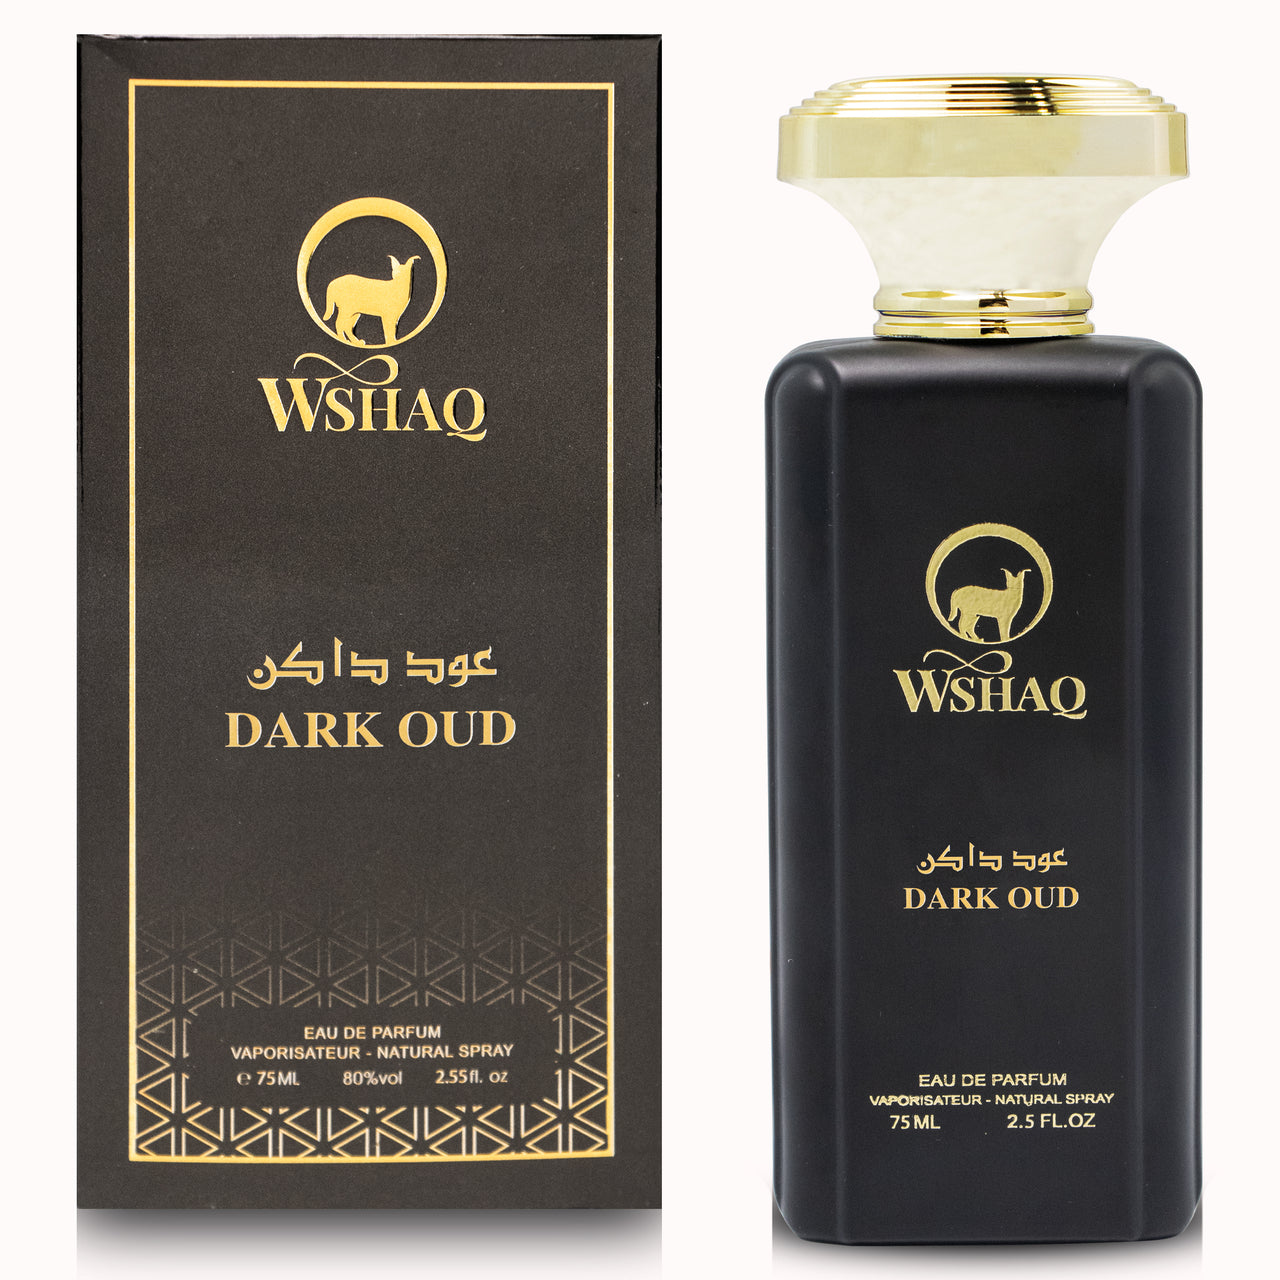 Dark oud Perfume